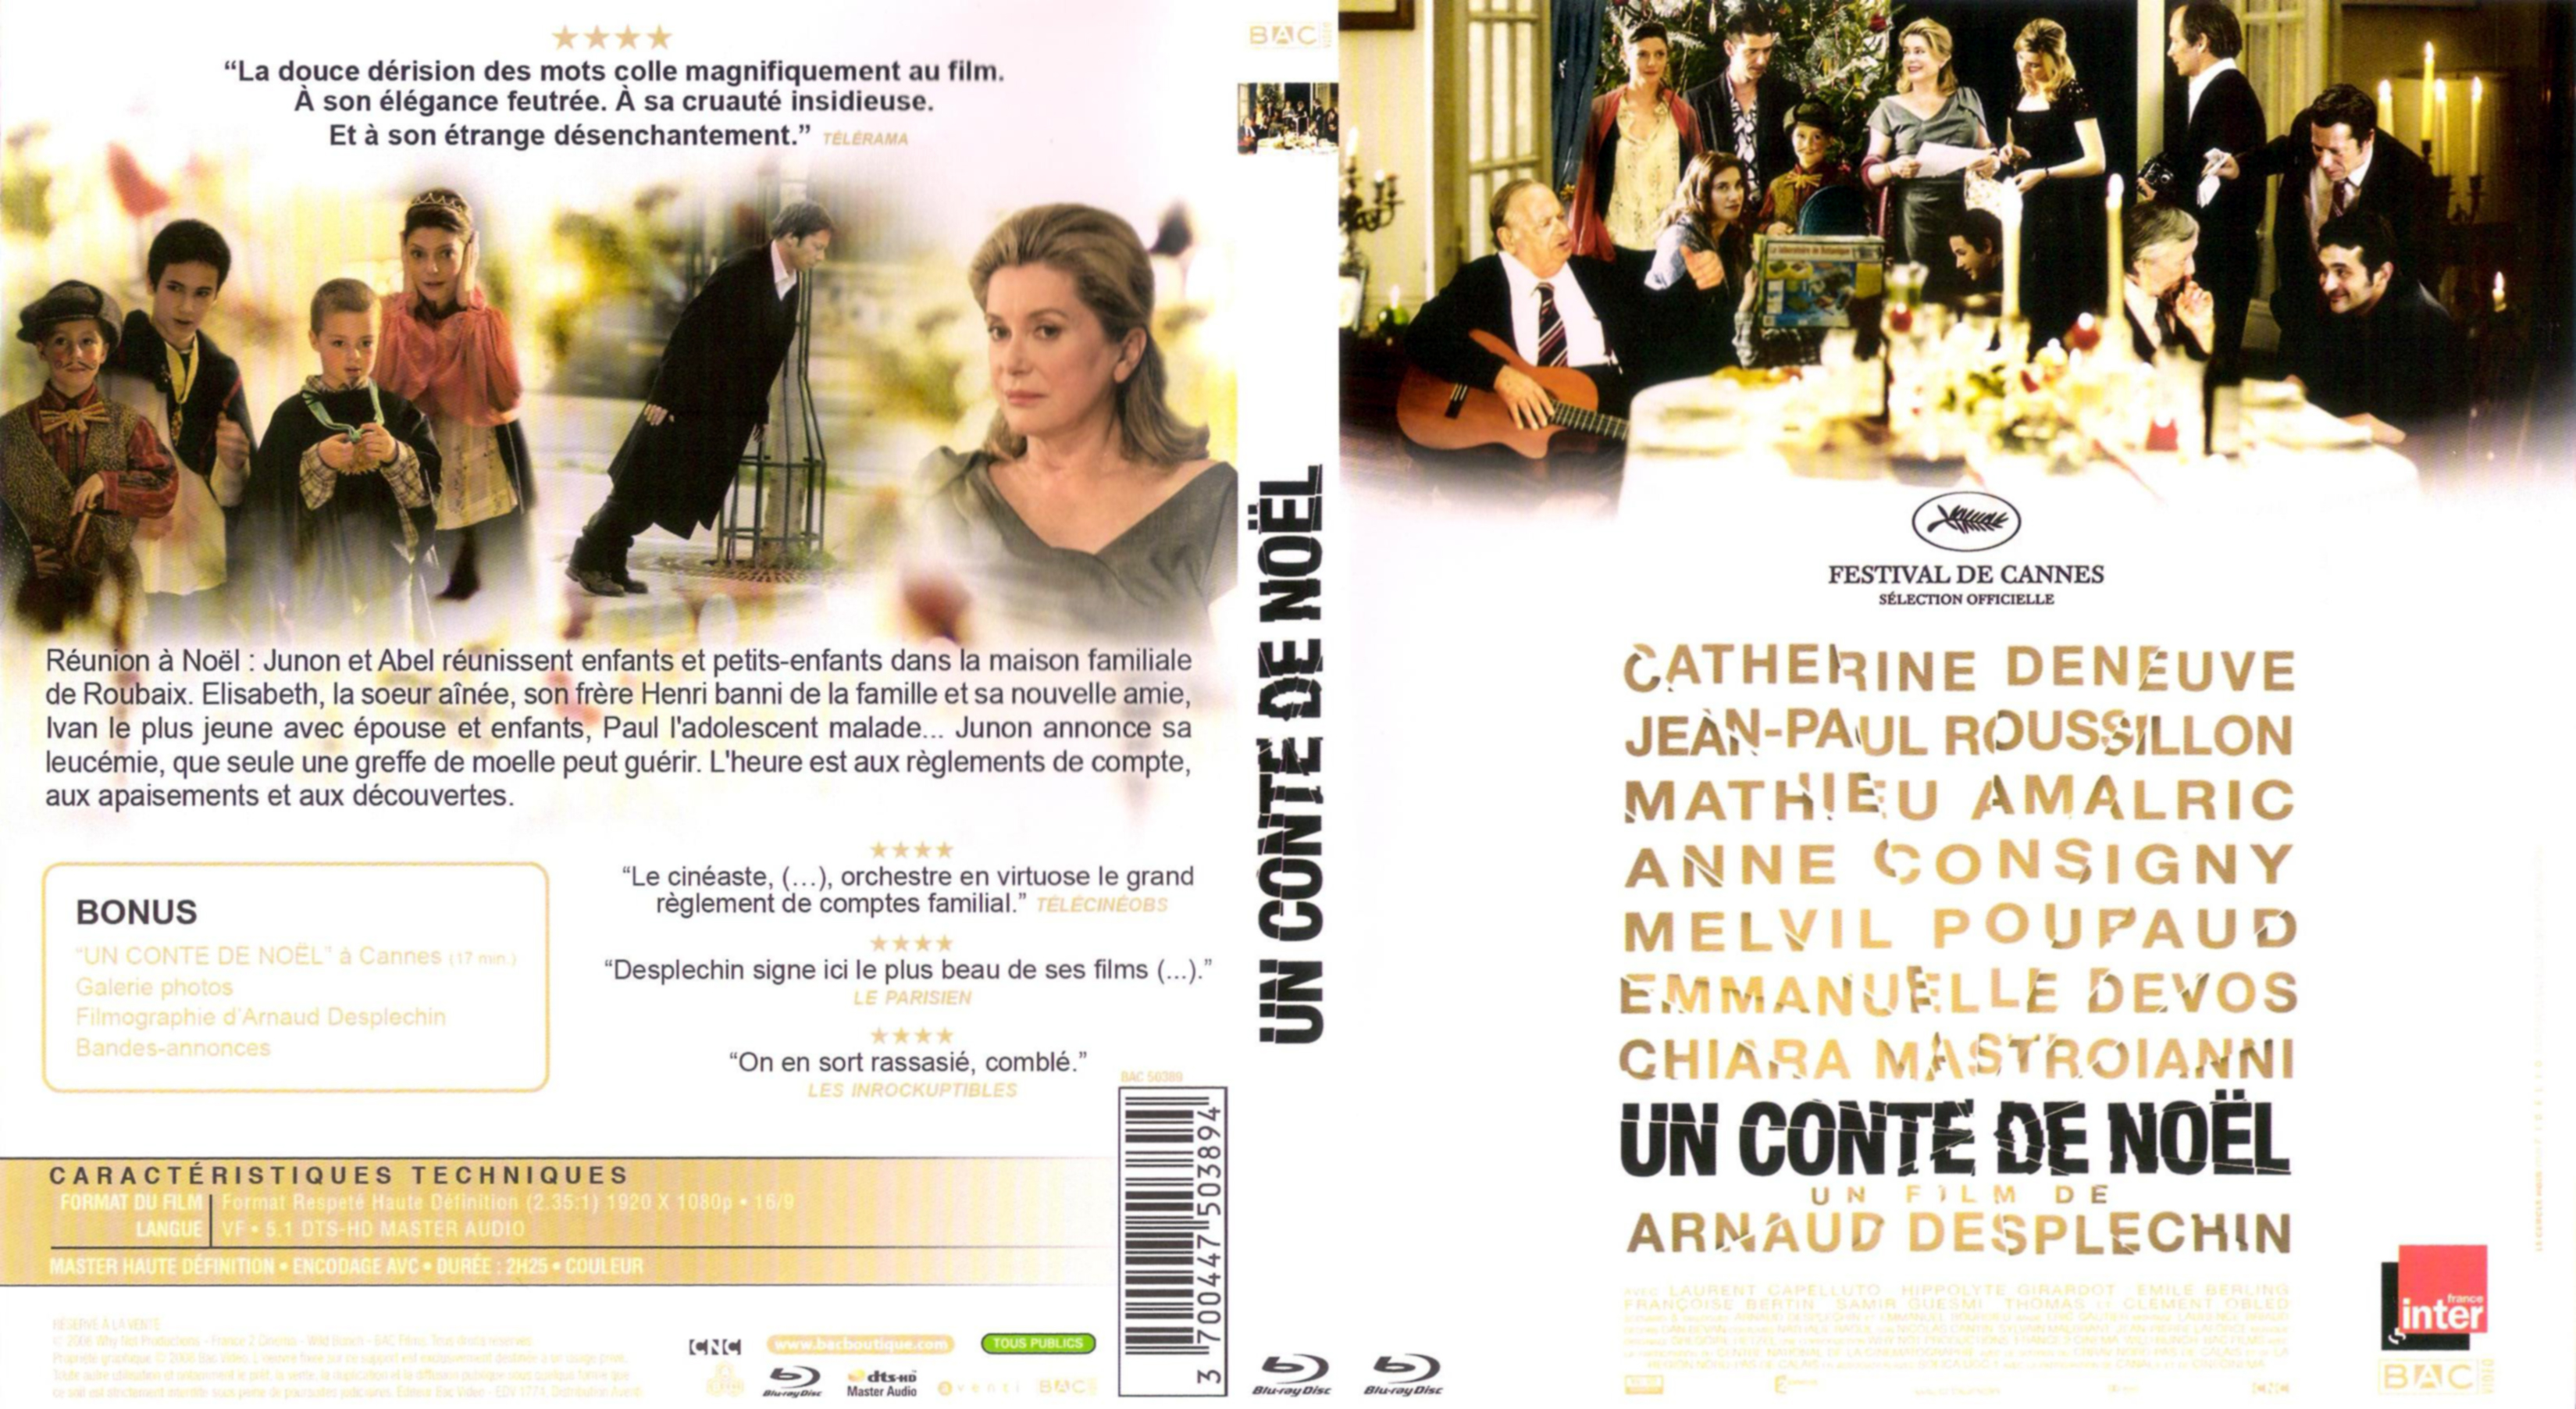 Jaquette DVD Un conte de Noel (2009) (BLU-RAY)